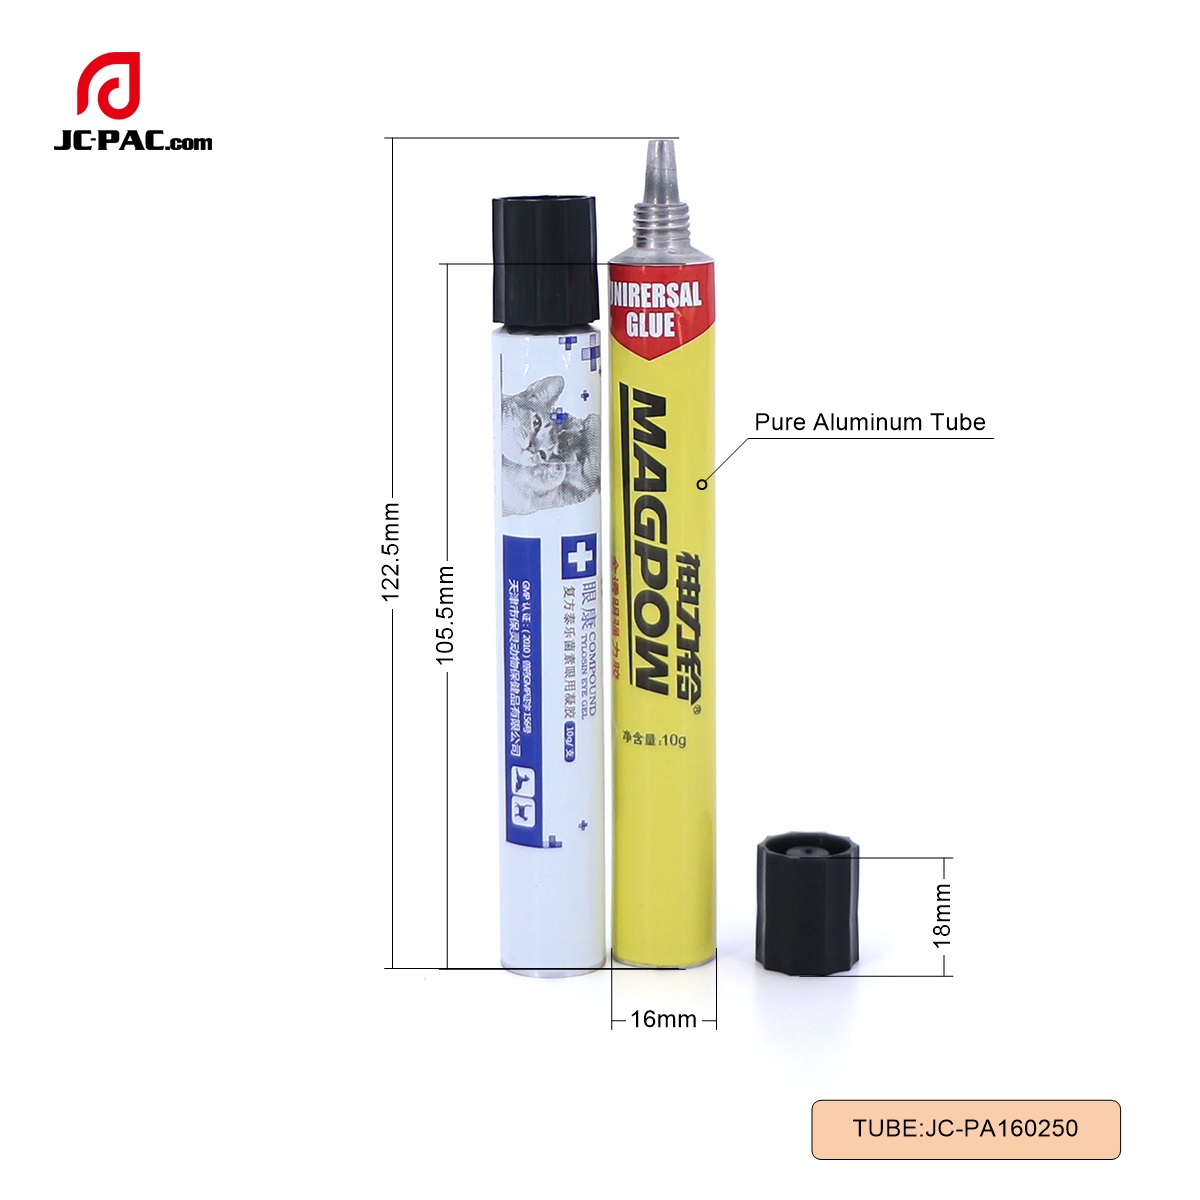 PA160250  10g Eye Ointment Tube Package, 10g Eye Gel Tube, Pure Aluminum Tube